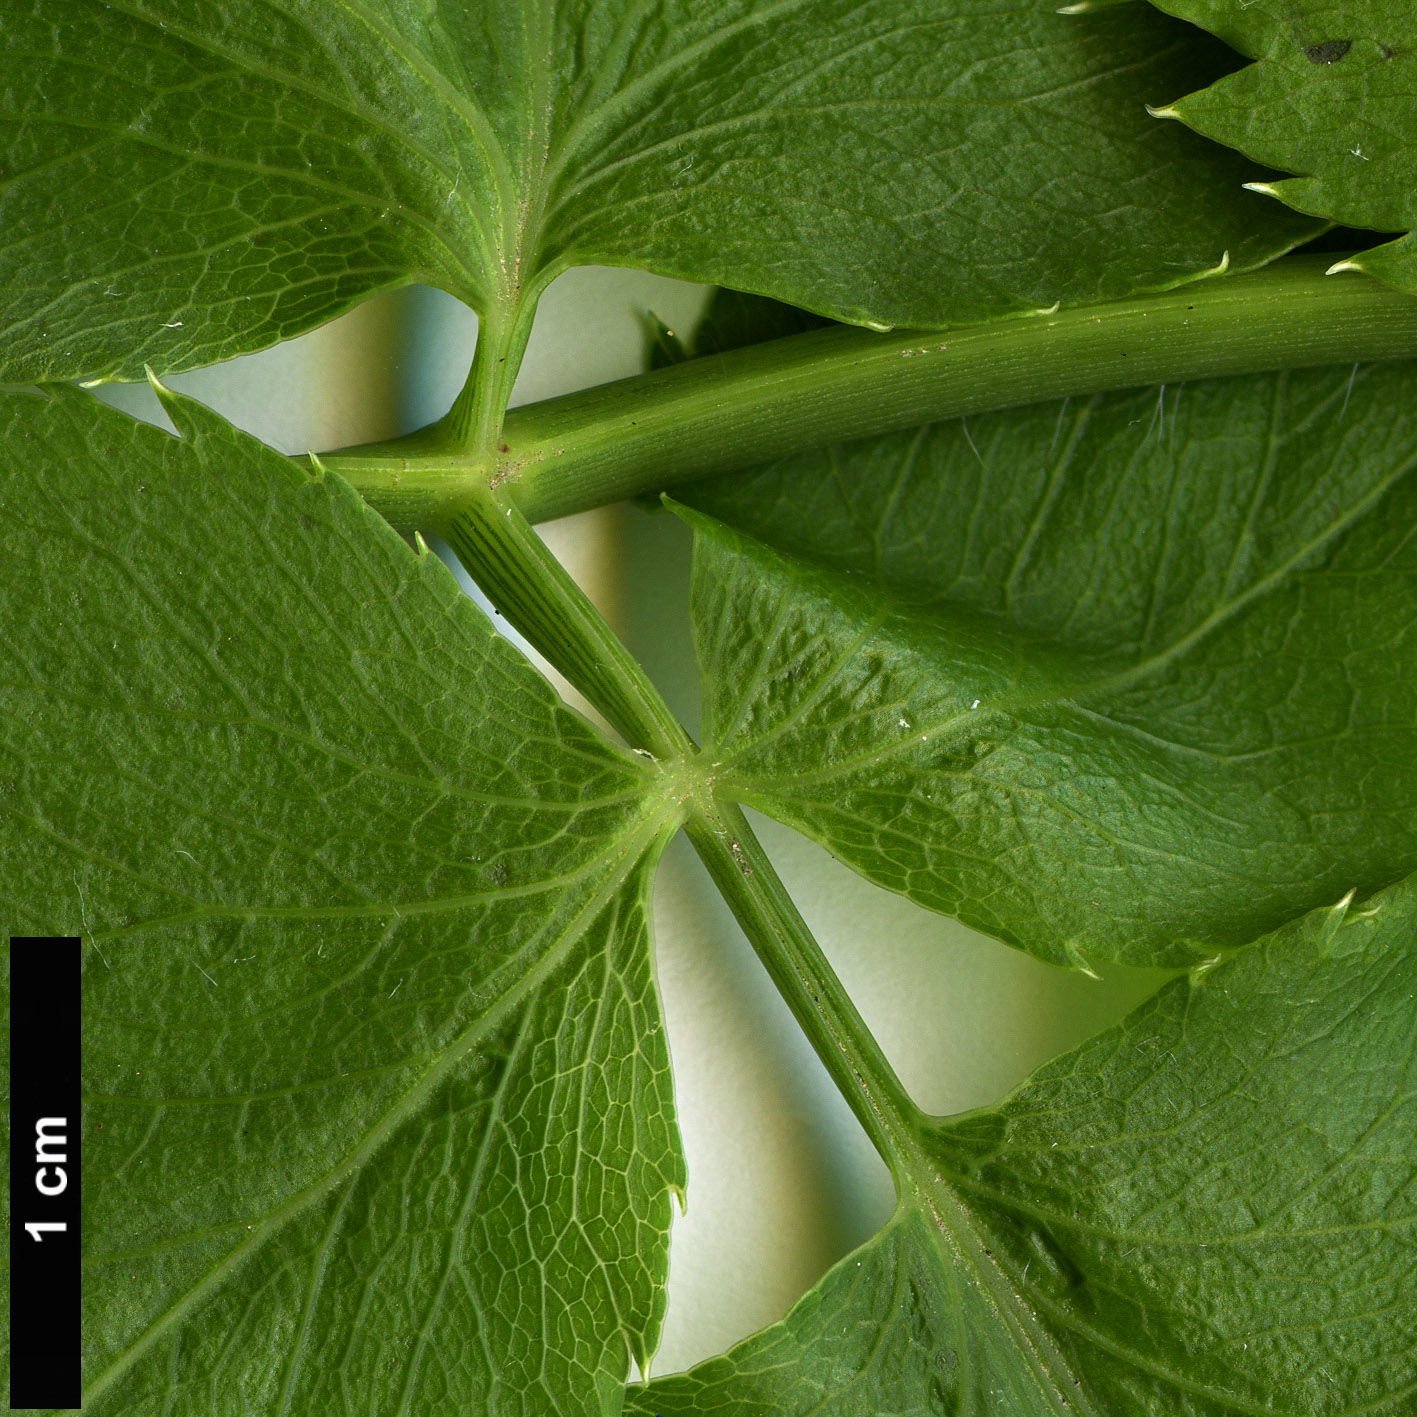 High resolution image: Family: Apiaceae - Genus: Melanoselinum - Taxon: decipiens